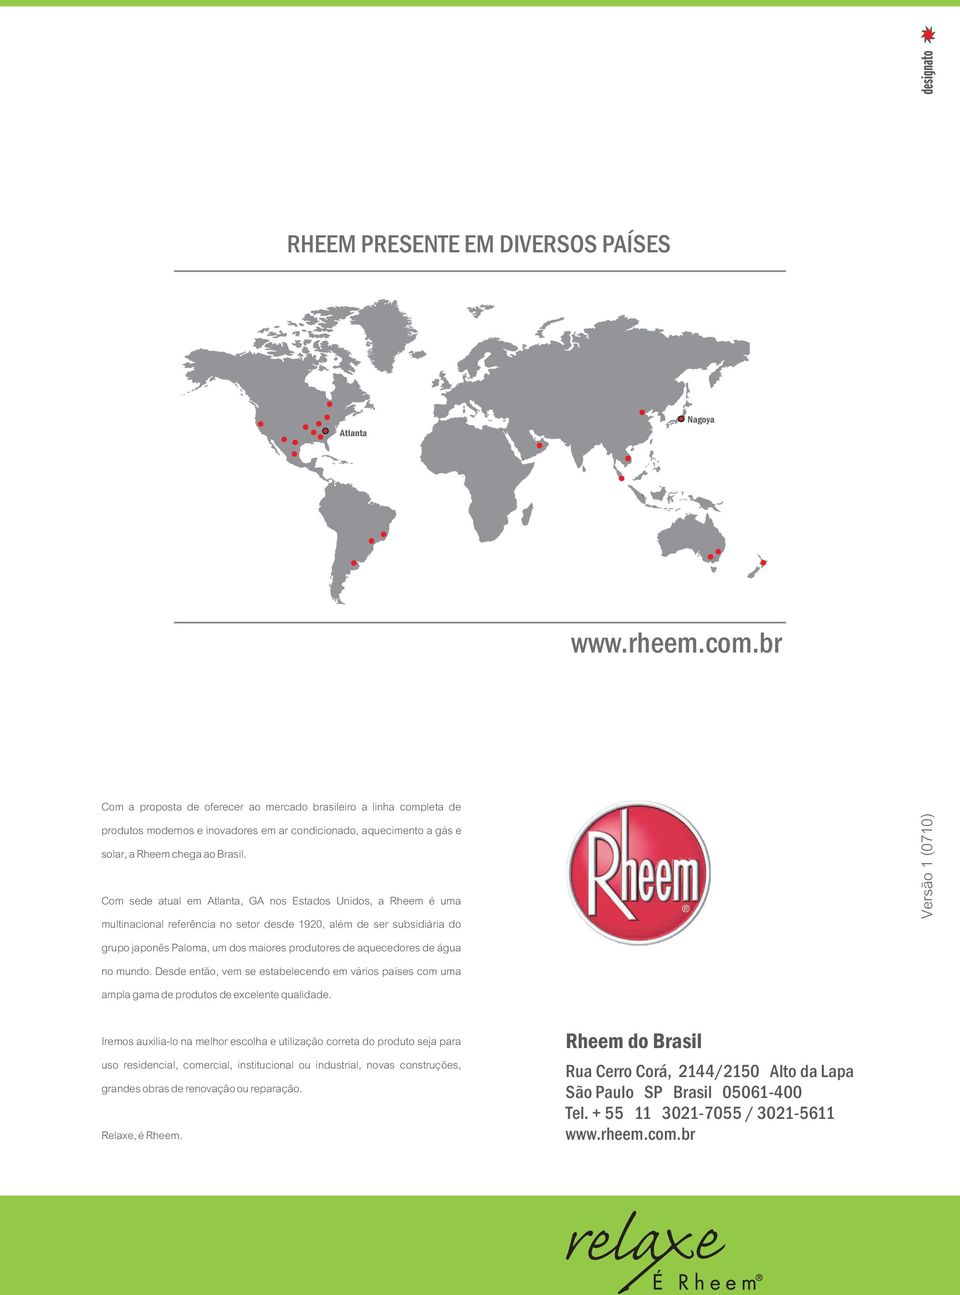 Com sede atual em tlanta, G nos Estados Unidos, a Rheem é uma multinacional referência no setor desde 1920, além de ser subsidiária do grupo japonês Paloma, um dos maiores produtores de aquecedores